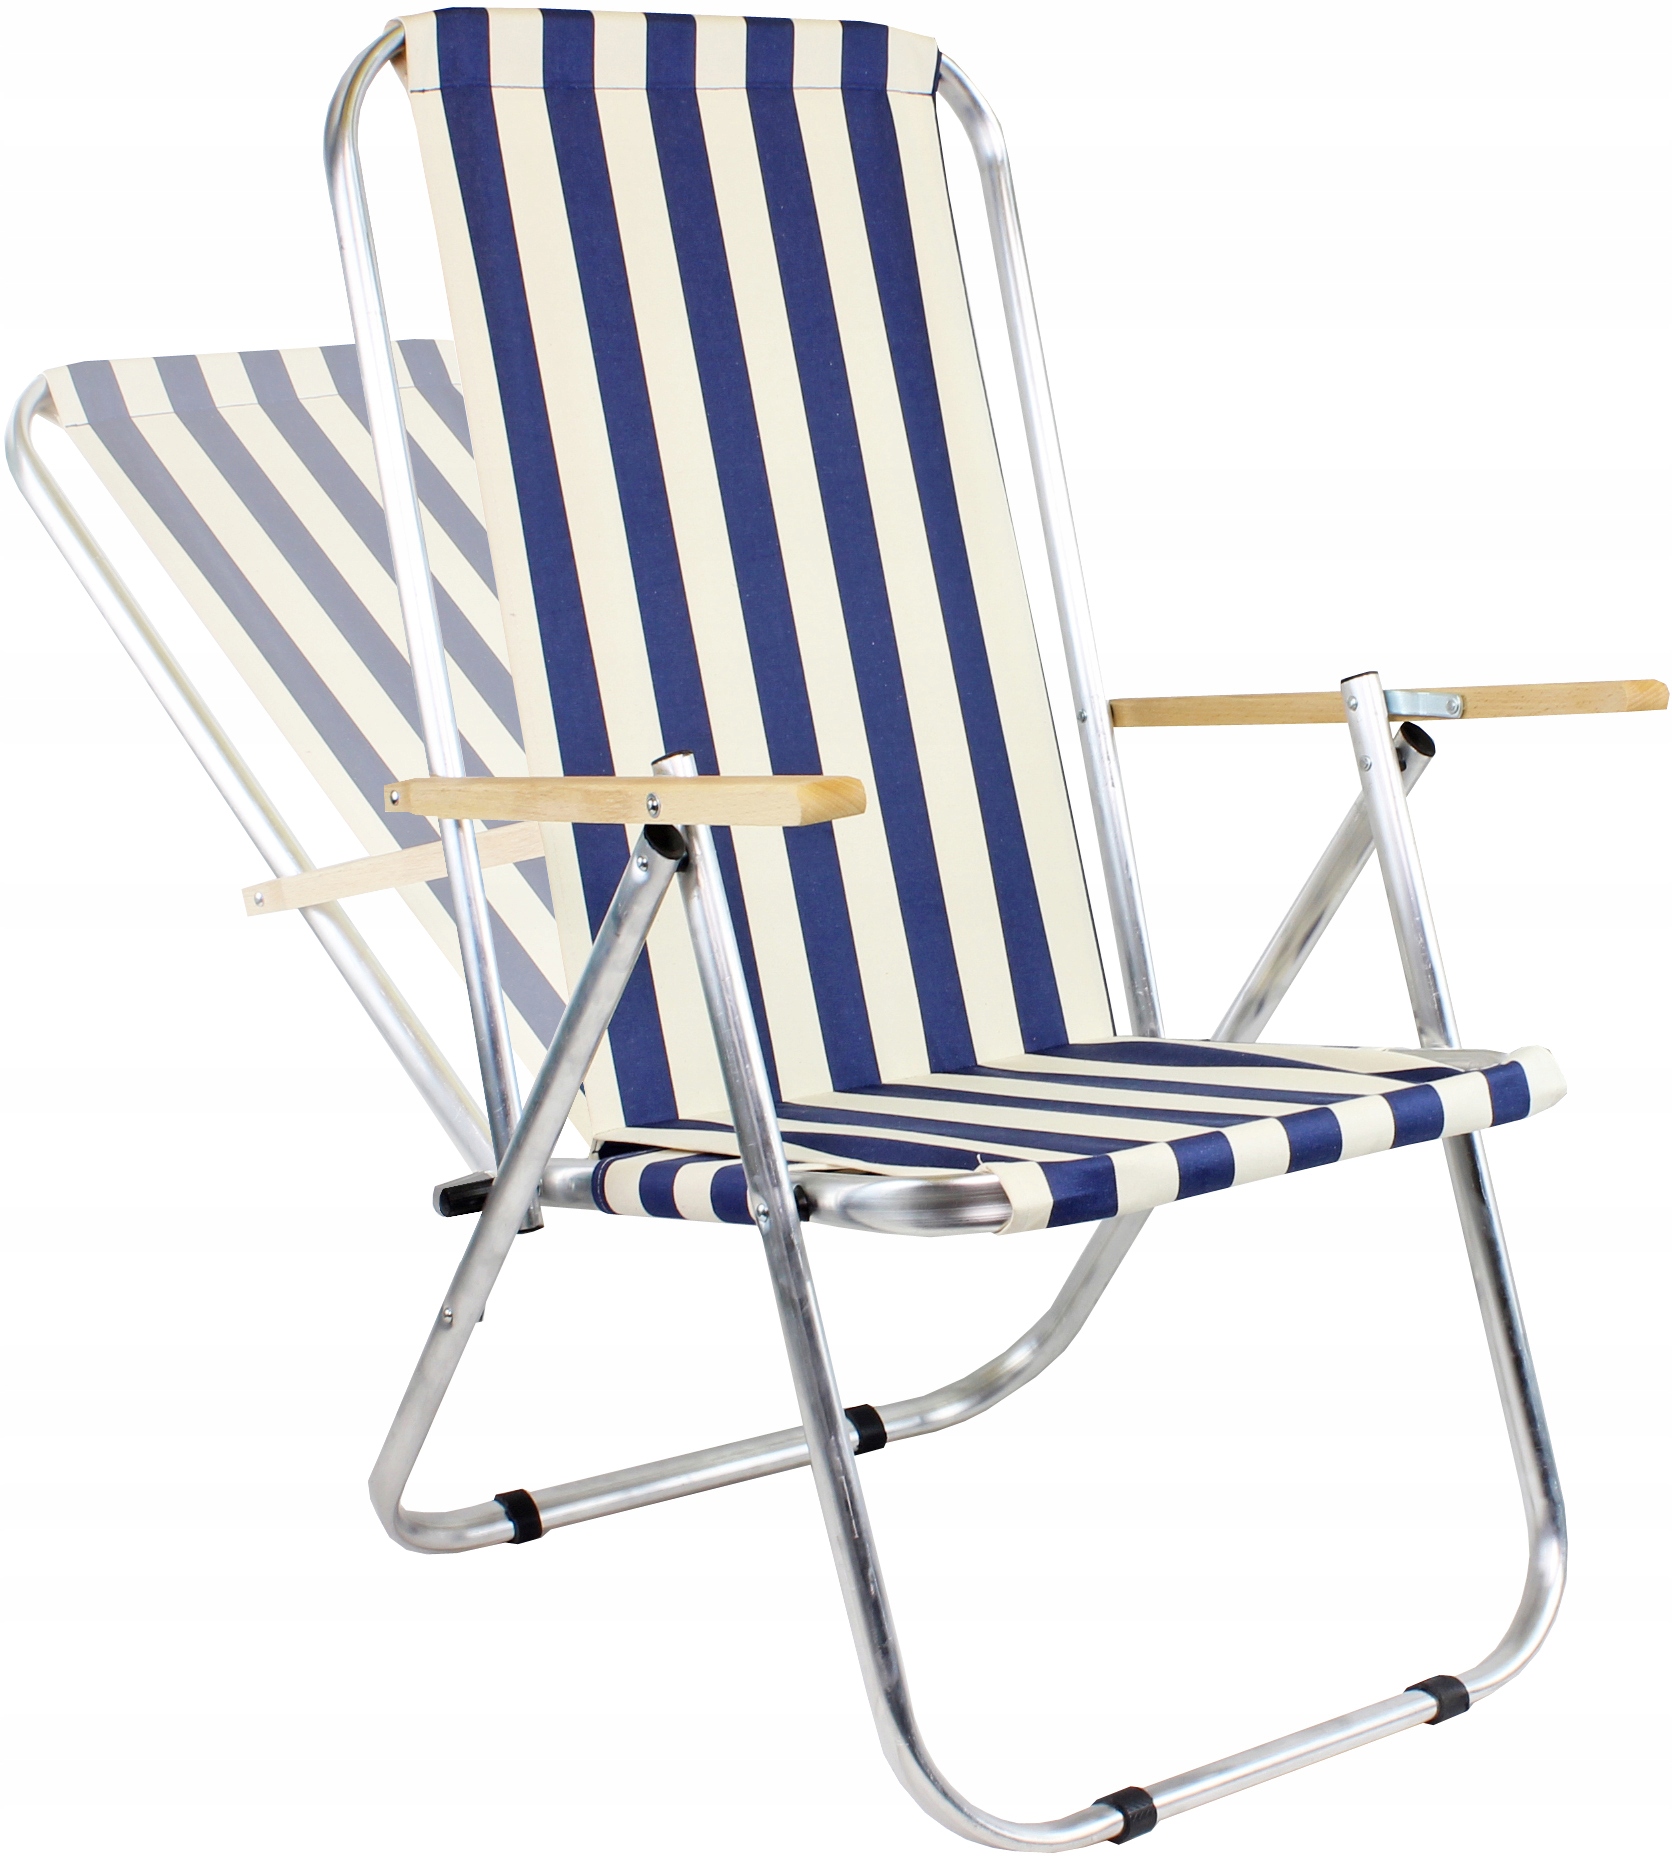 Krzesło plażowe, leżak ogrodowy aluminiowy, 150 KG 9195836973 - Allegro.pl